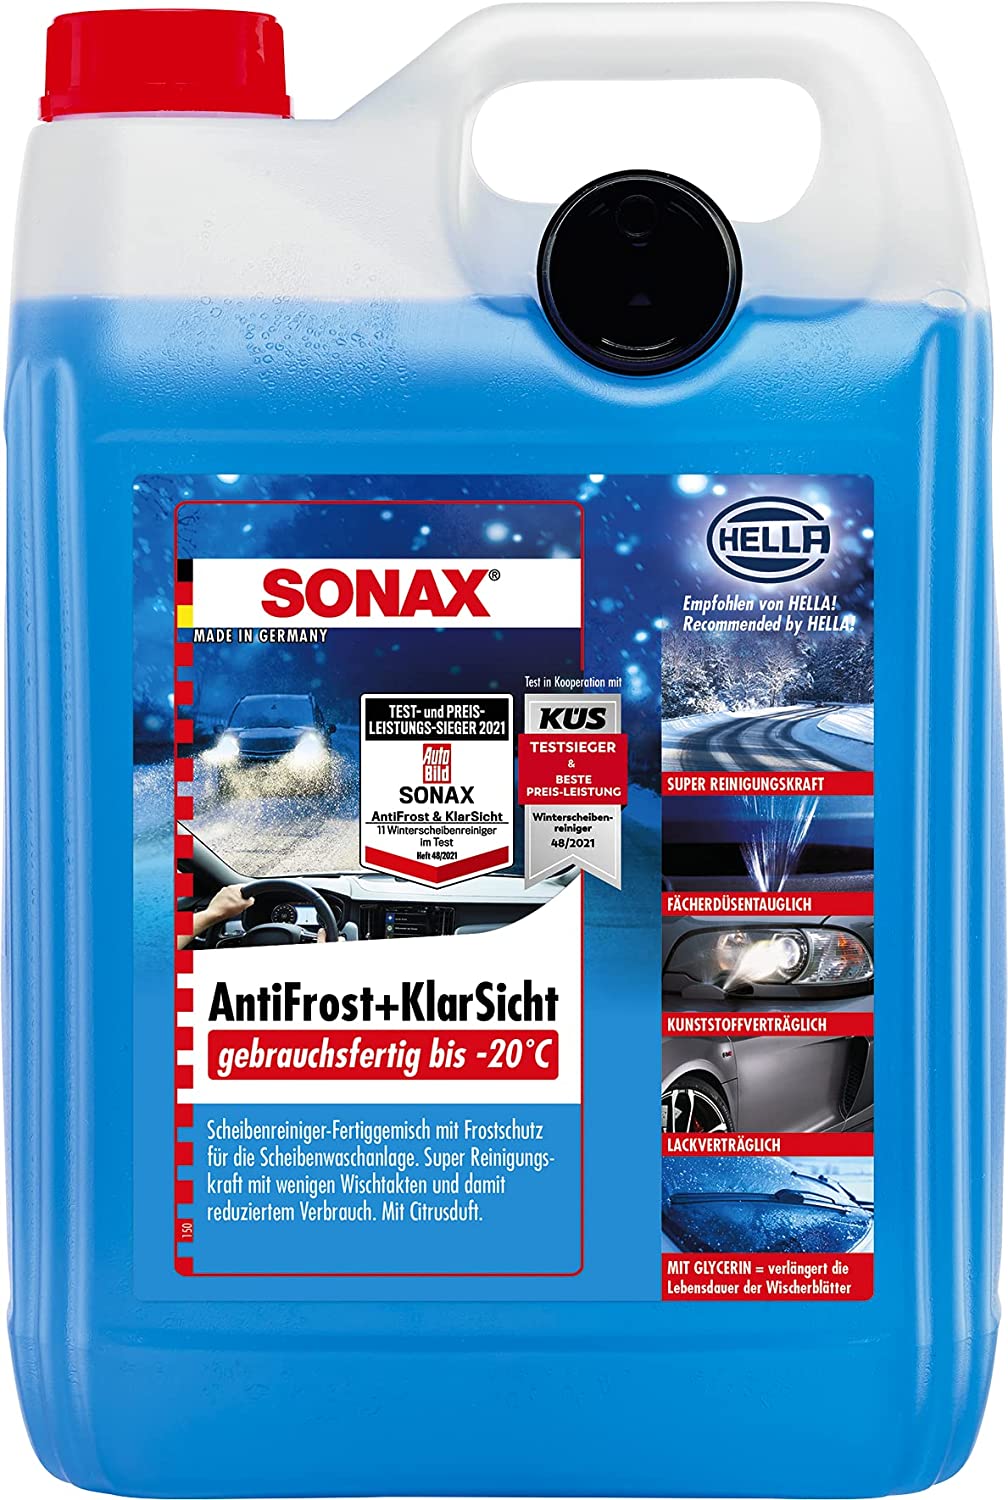 SONAX® AntiFrost plus Klarsicht Konzentrat Citrus